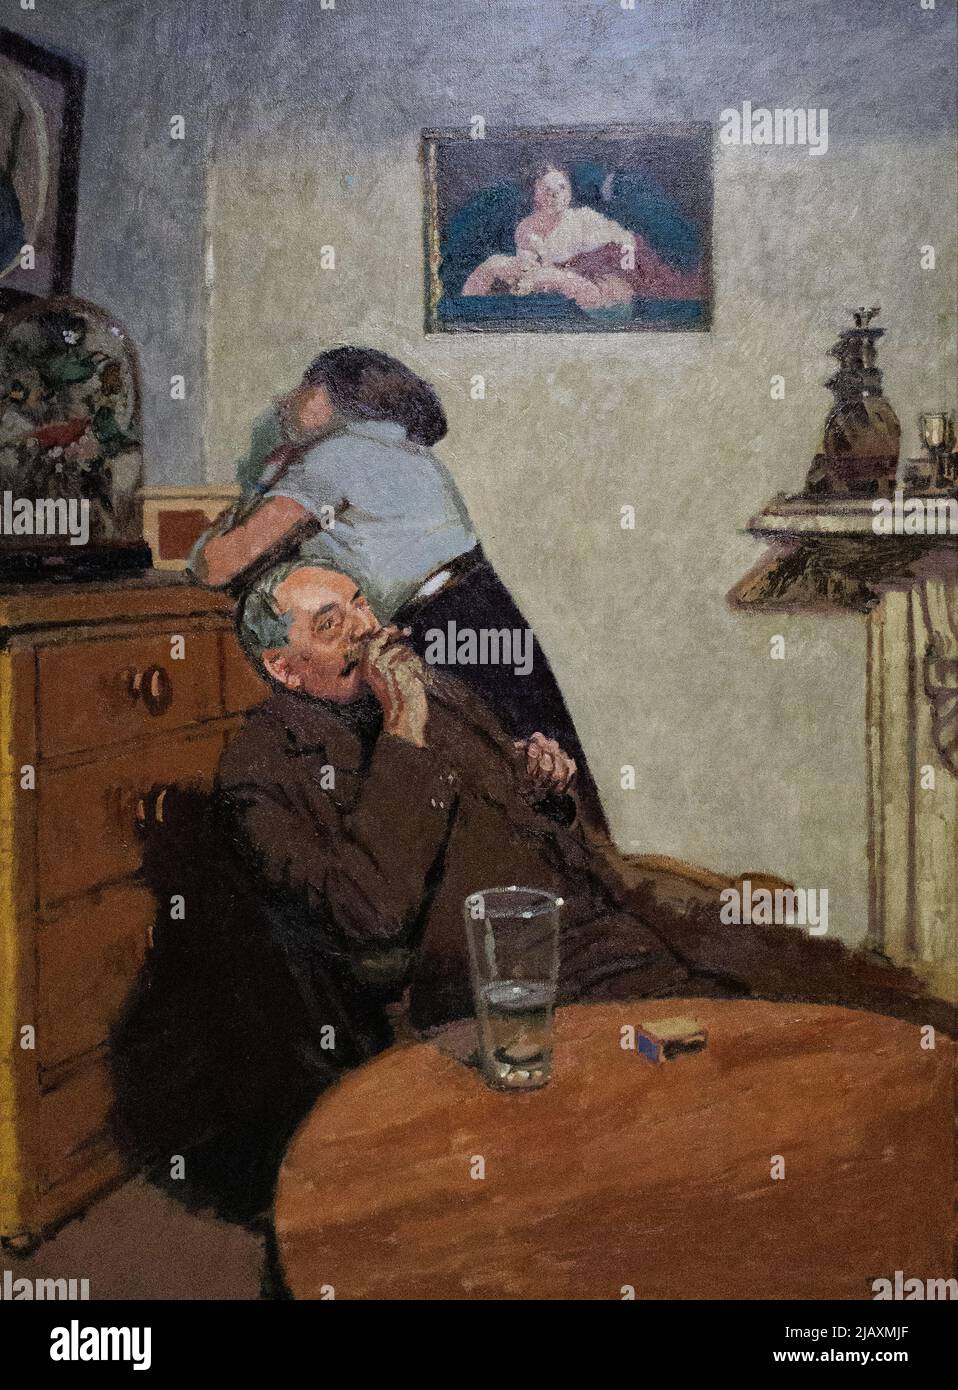 Post Impressionnisme - Walter Sickert peinture; ' ennui ' ( ennui ), 1914. Huile sur toile, art post-impressionniste britannique du 20th siècle Banque D'Images